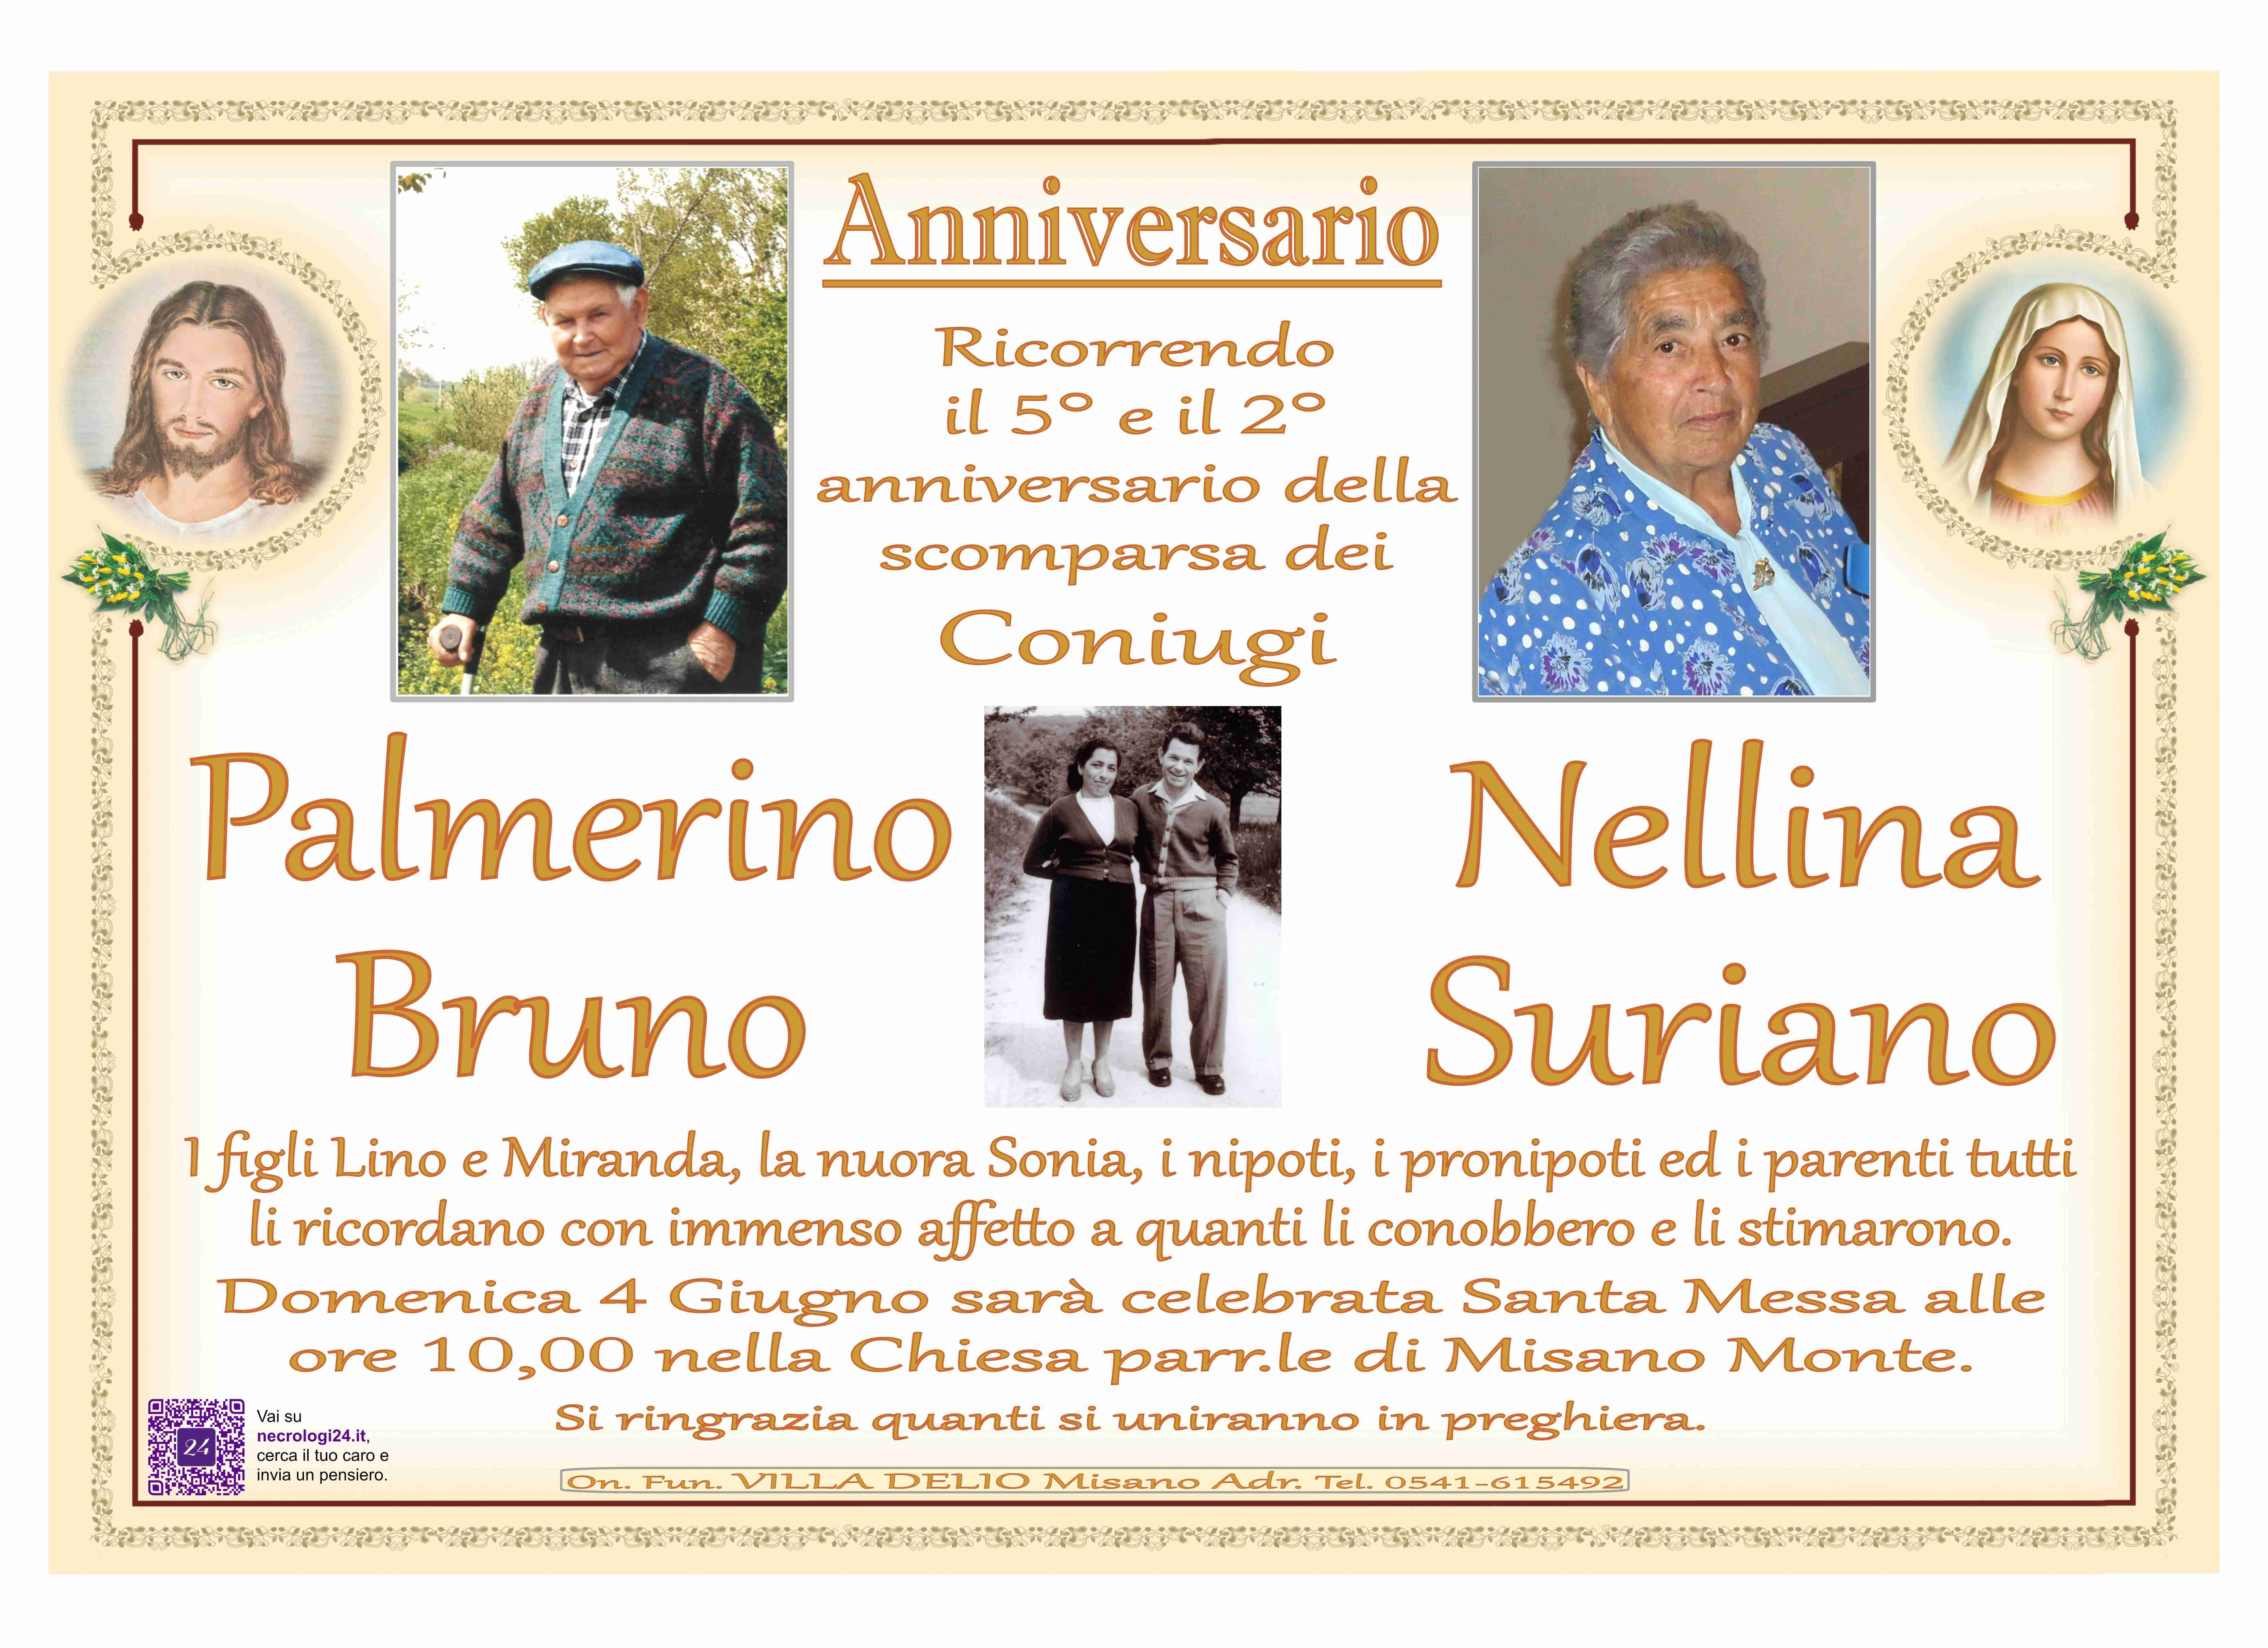 Palmerino Bruno e Nellina Suriano